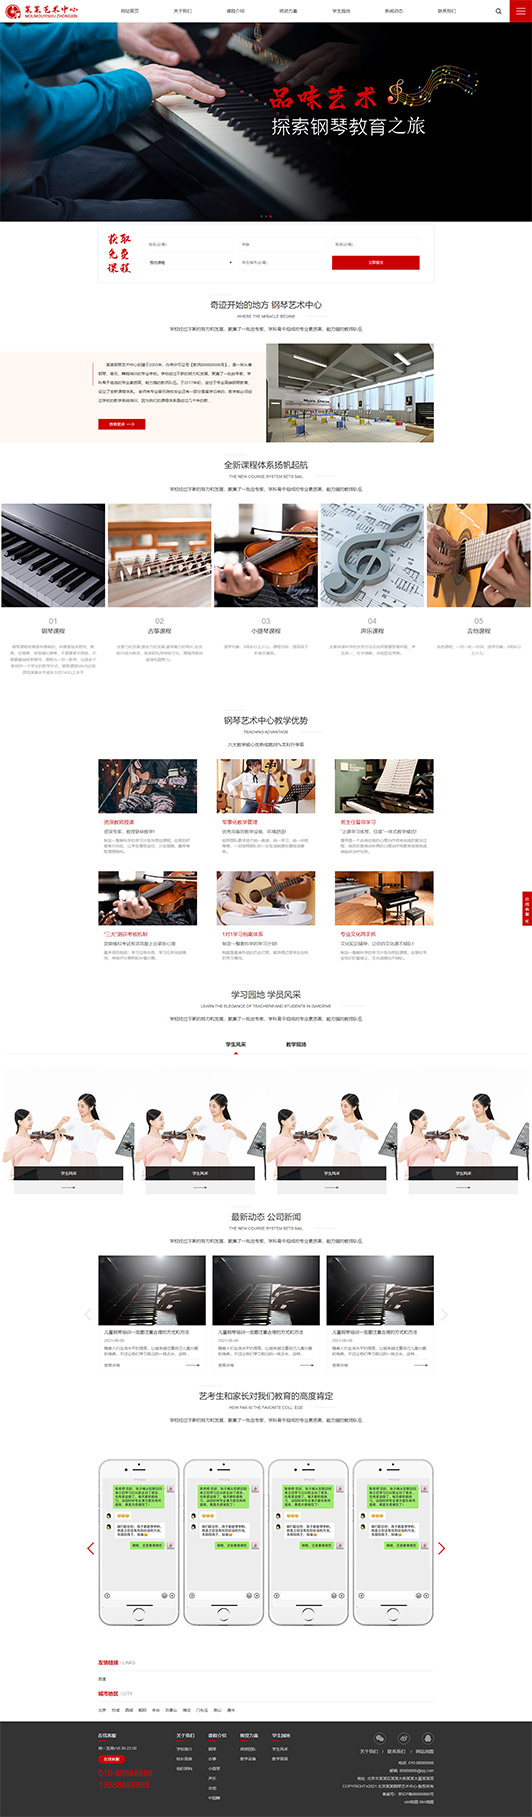 仙桃钢琴艺术培训公司响应式企业网站